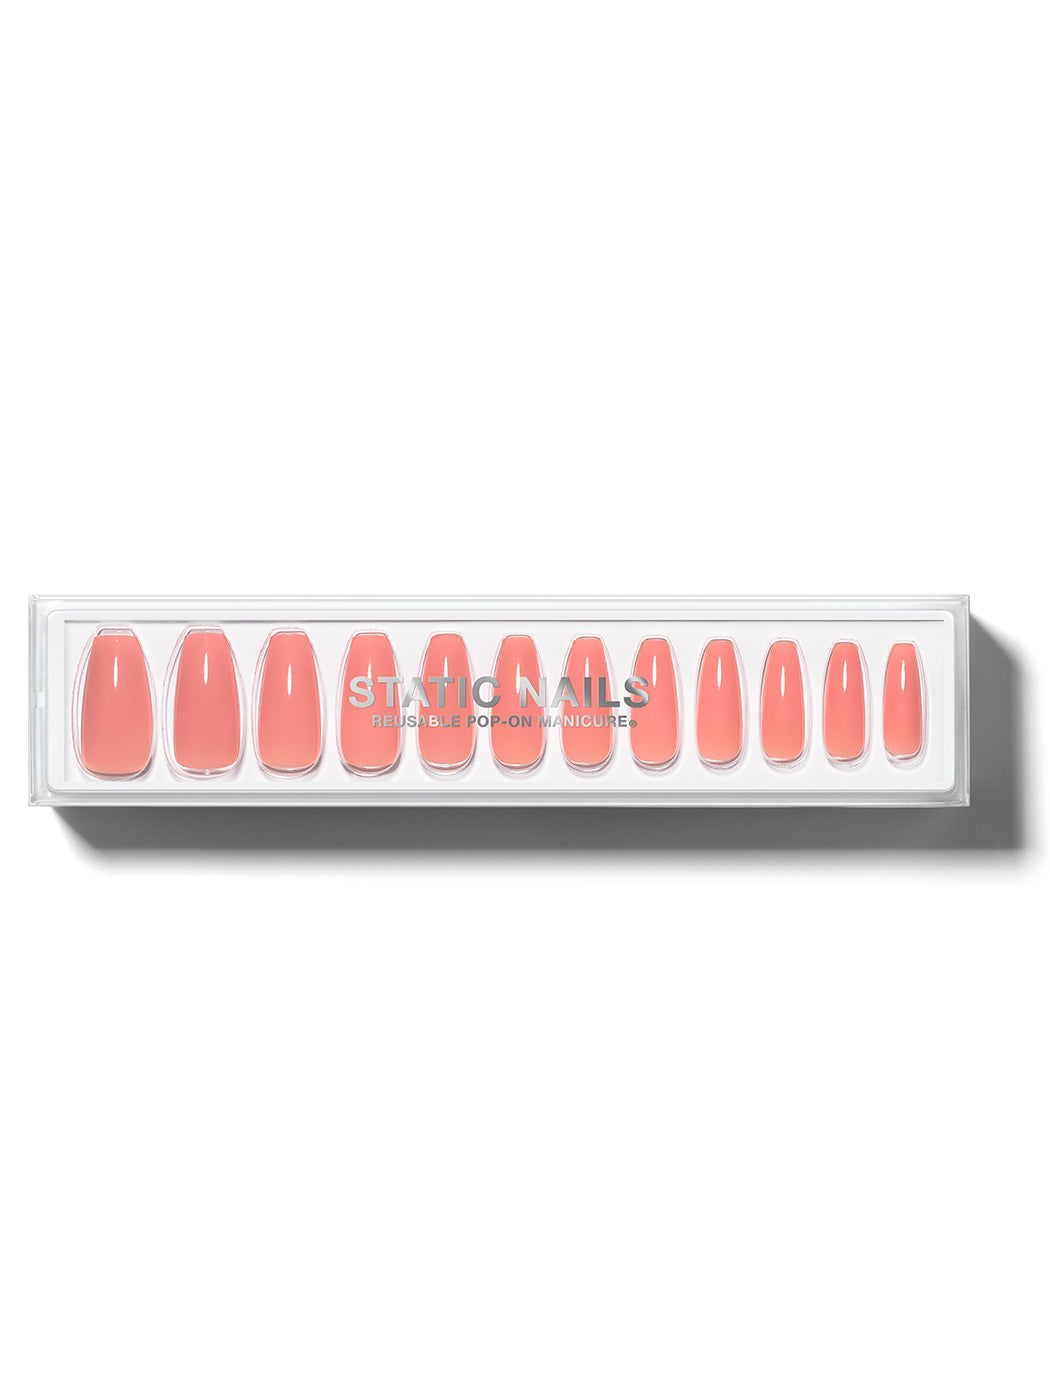 Orangey-pink manicure in long coffin shape,